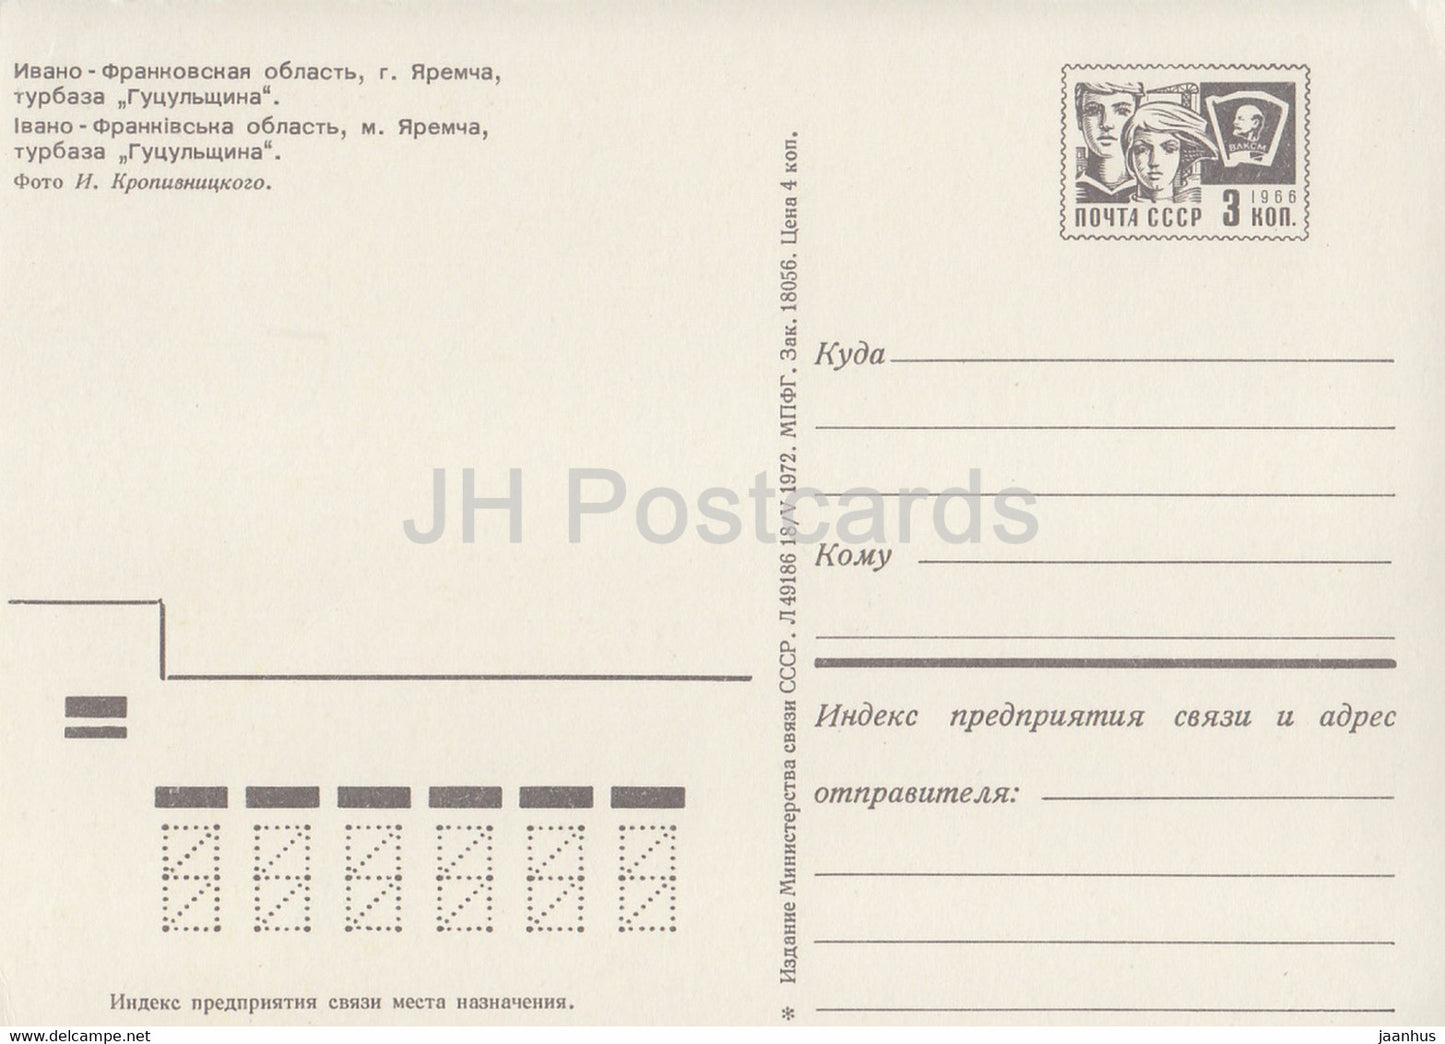 Jaremtsche - Gutsulschina - Oblast Iwano-Frankiwsk - Karpaten - Ganzsache 1972 - Ukraine UdSSR - unbenutzt